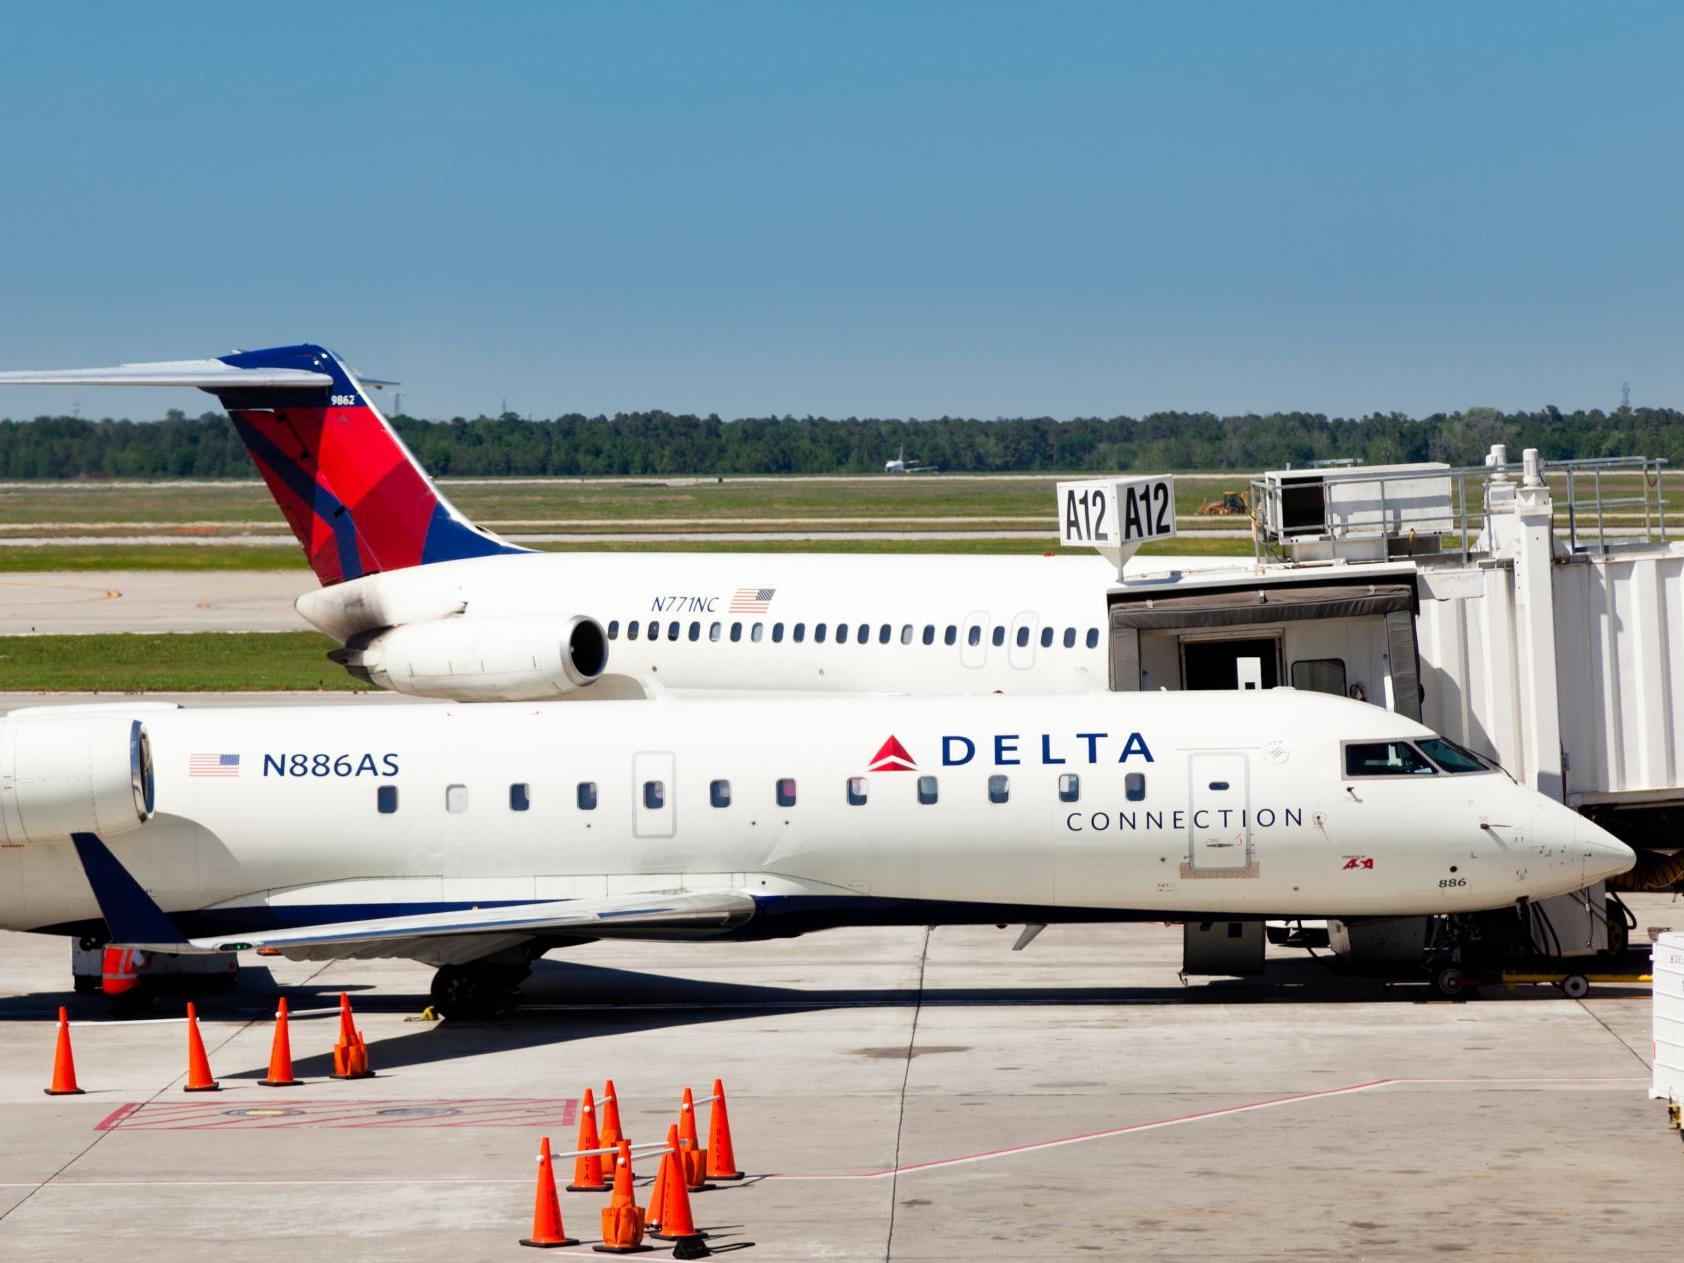 A Delta flight had to divert when a windshield crack was found mid-flight